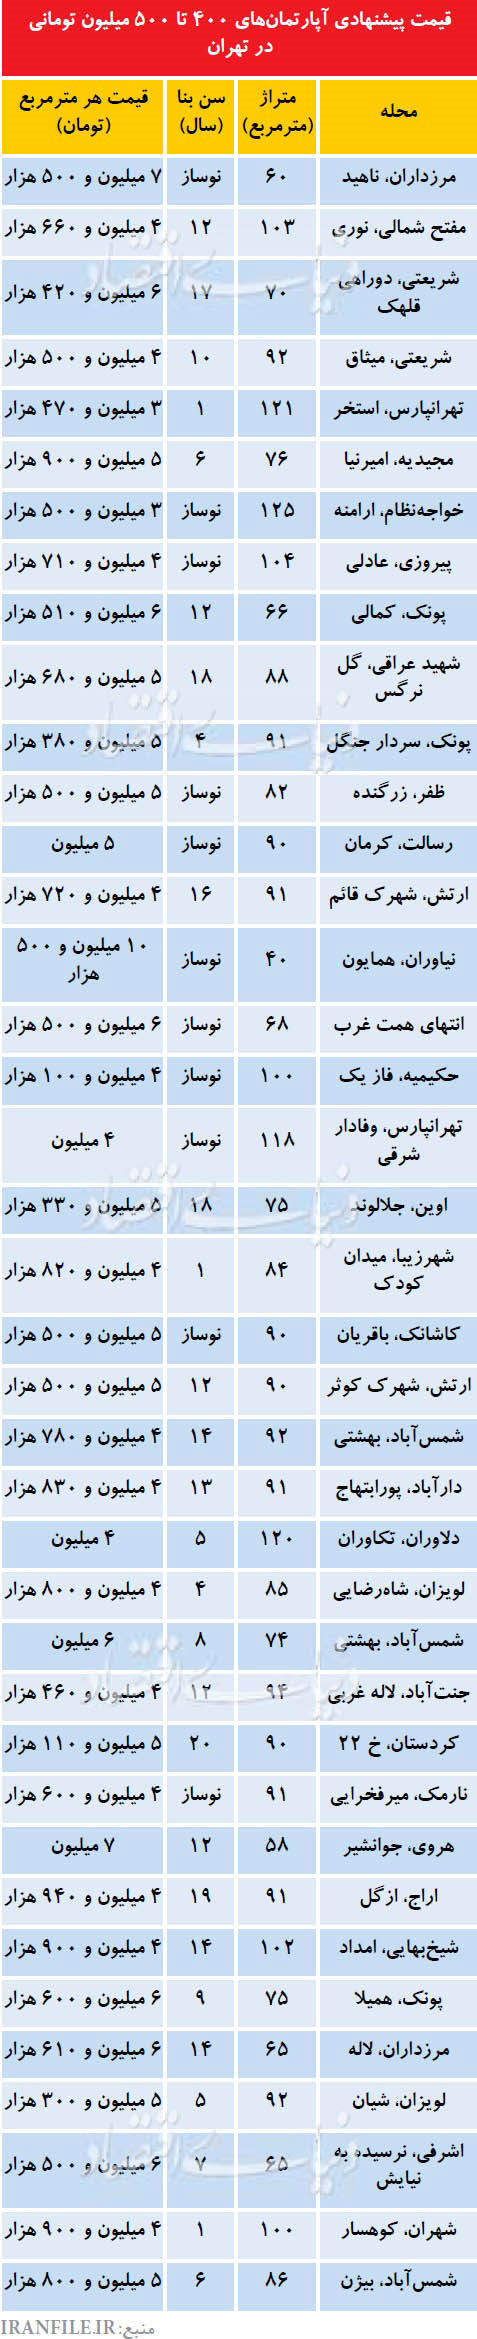 آپارتمان های 400 تا 500 میلیون تومانی در تهران